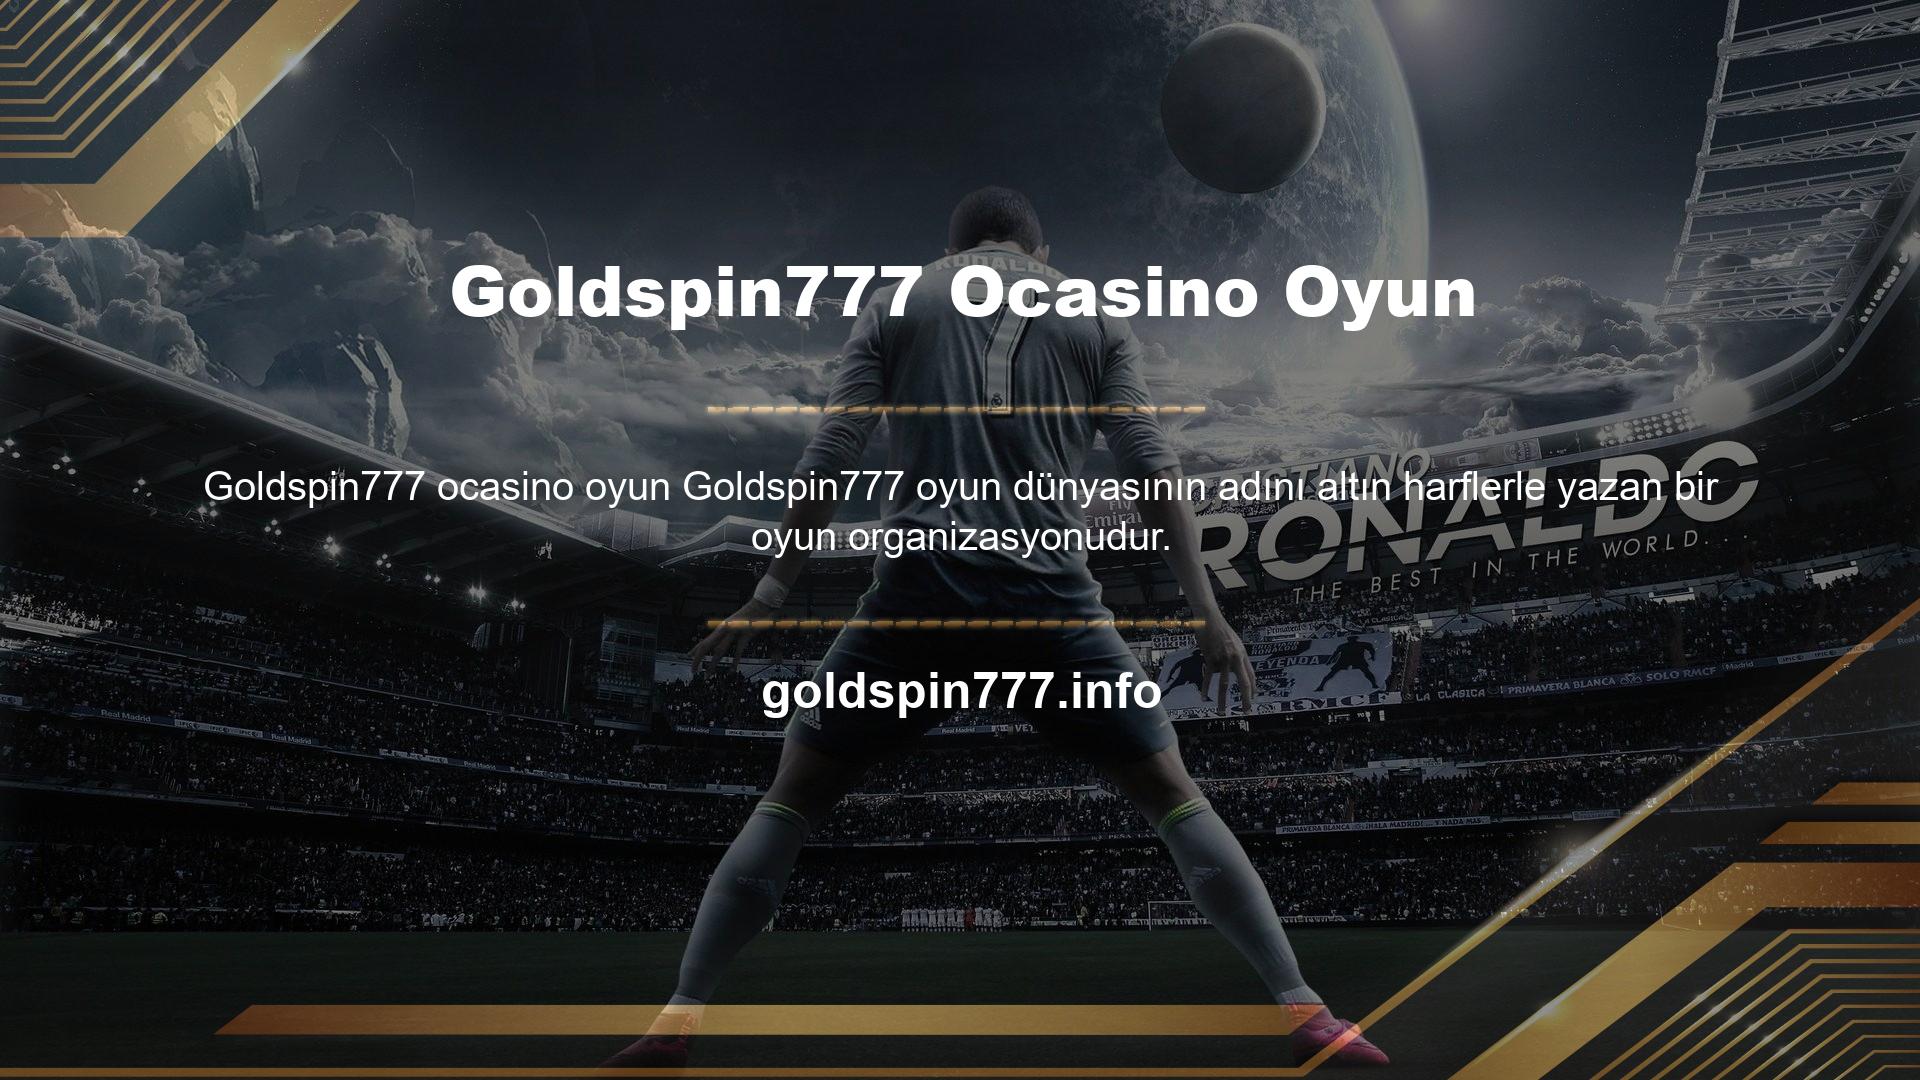 Goldspin777, casino tutkunlarını derinden yaralayan tuhaf bonuslara ve faaliyetlere sahiptir